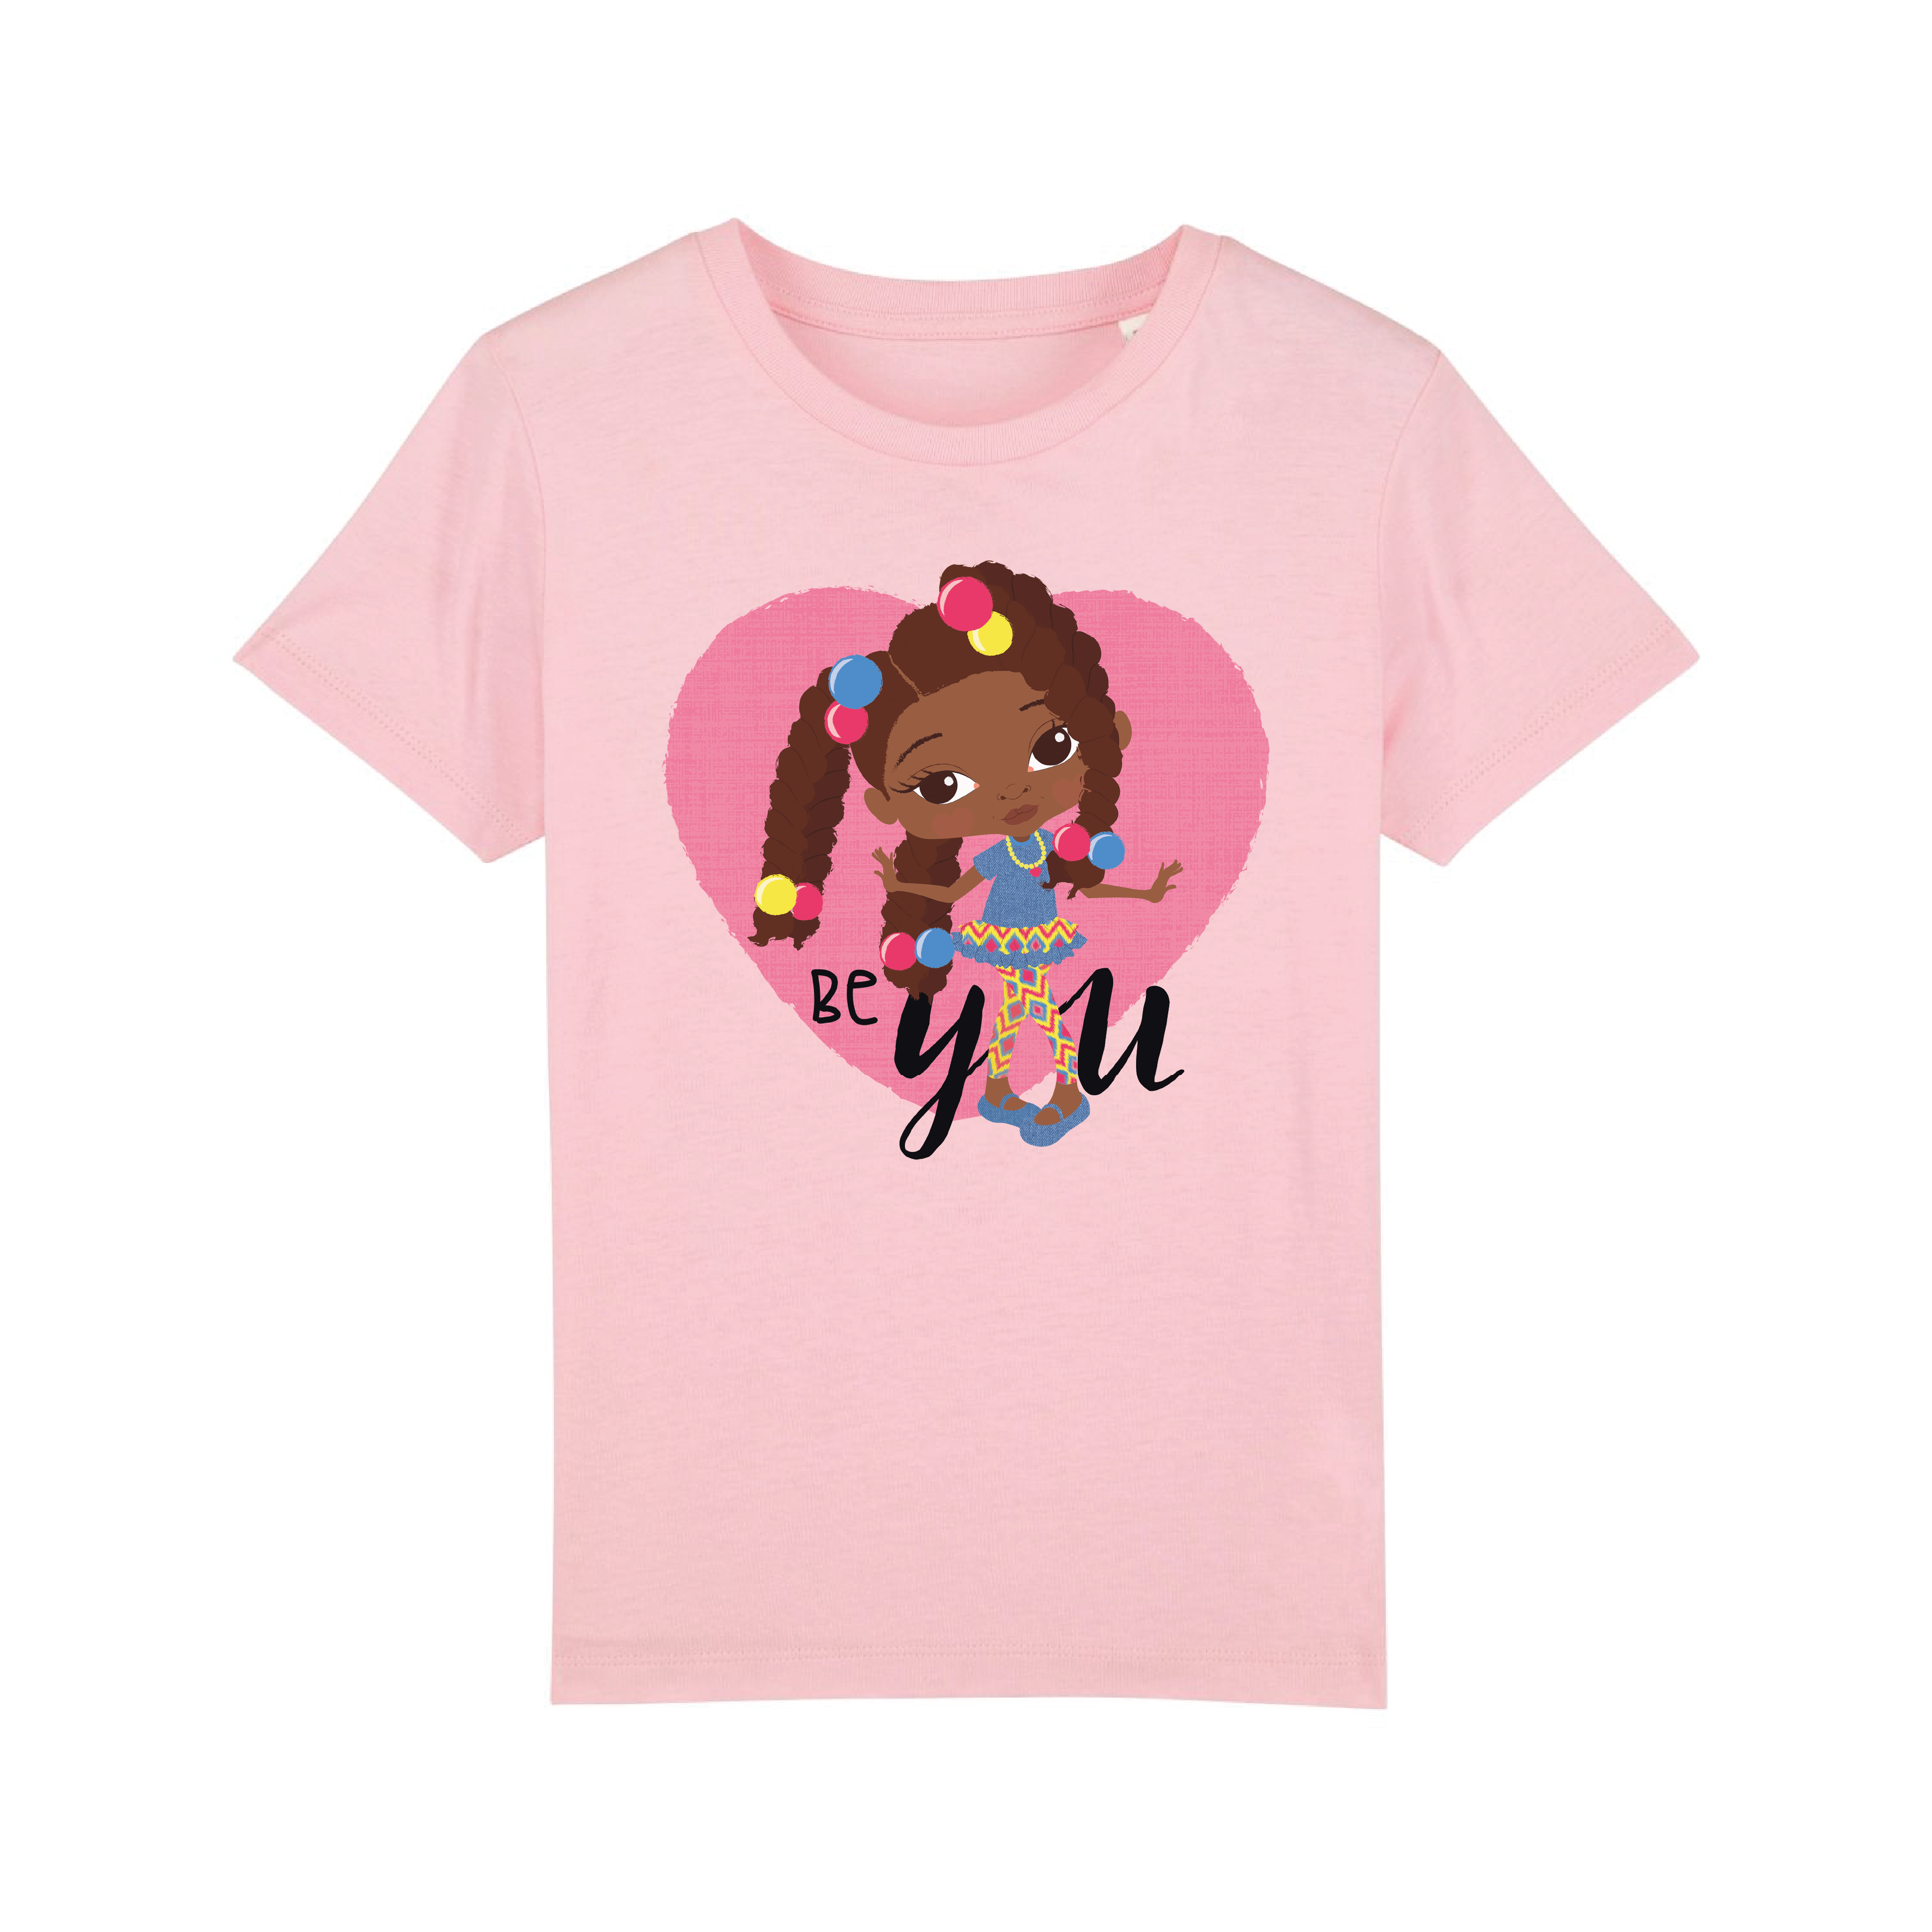 Reine - BE YOU Big Twist Girl - Girls T-shirt | Fefus Designs